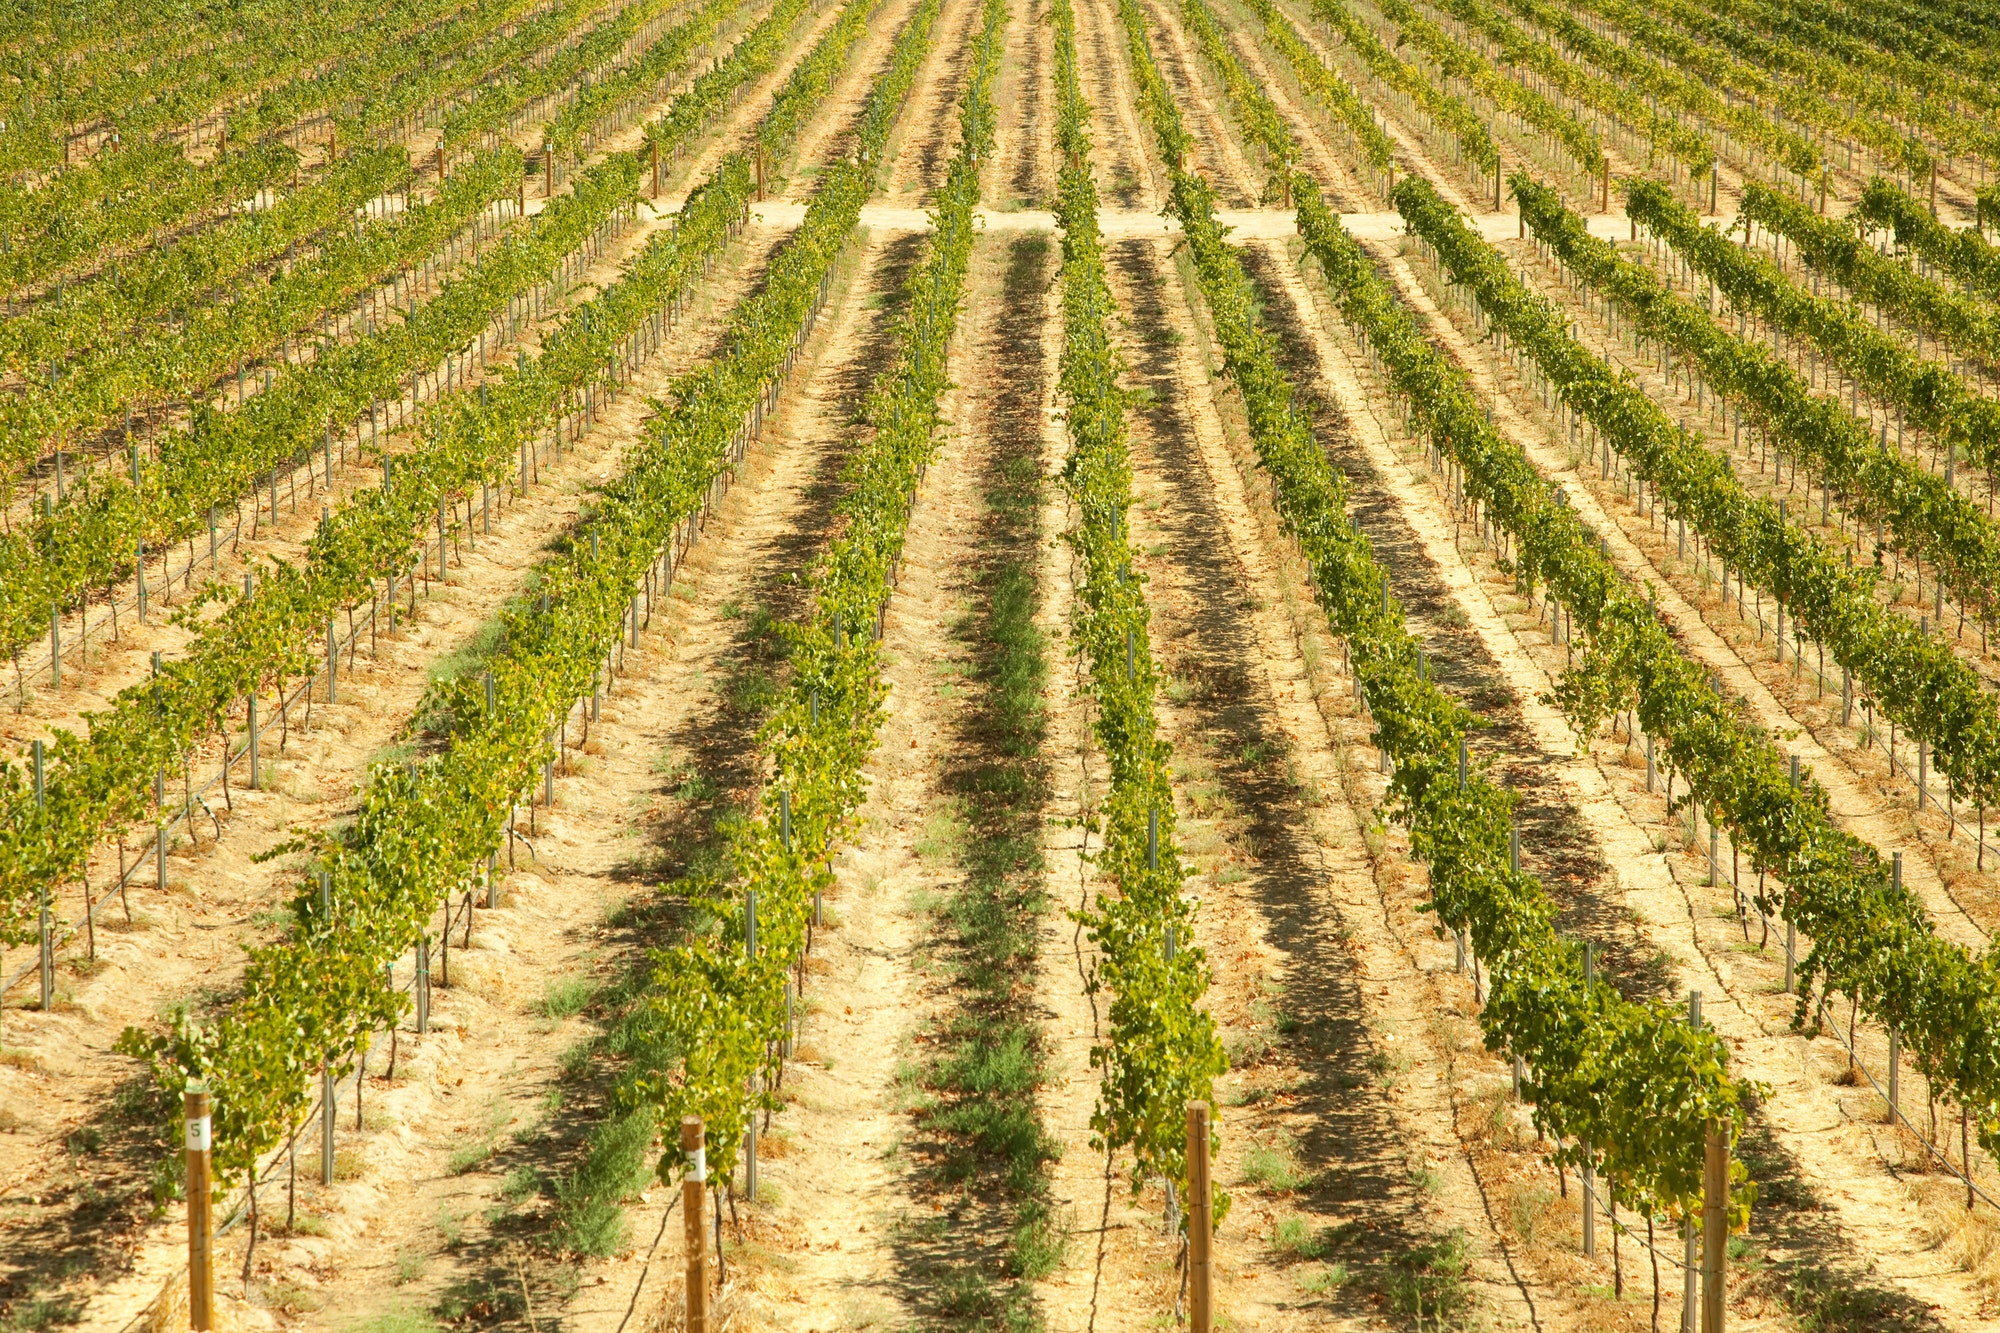 La route des vins en Californie : découverte et dégustation